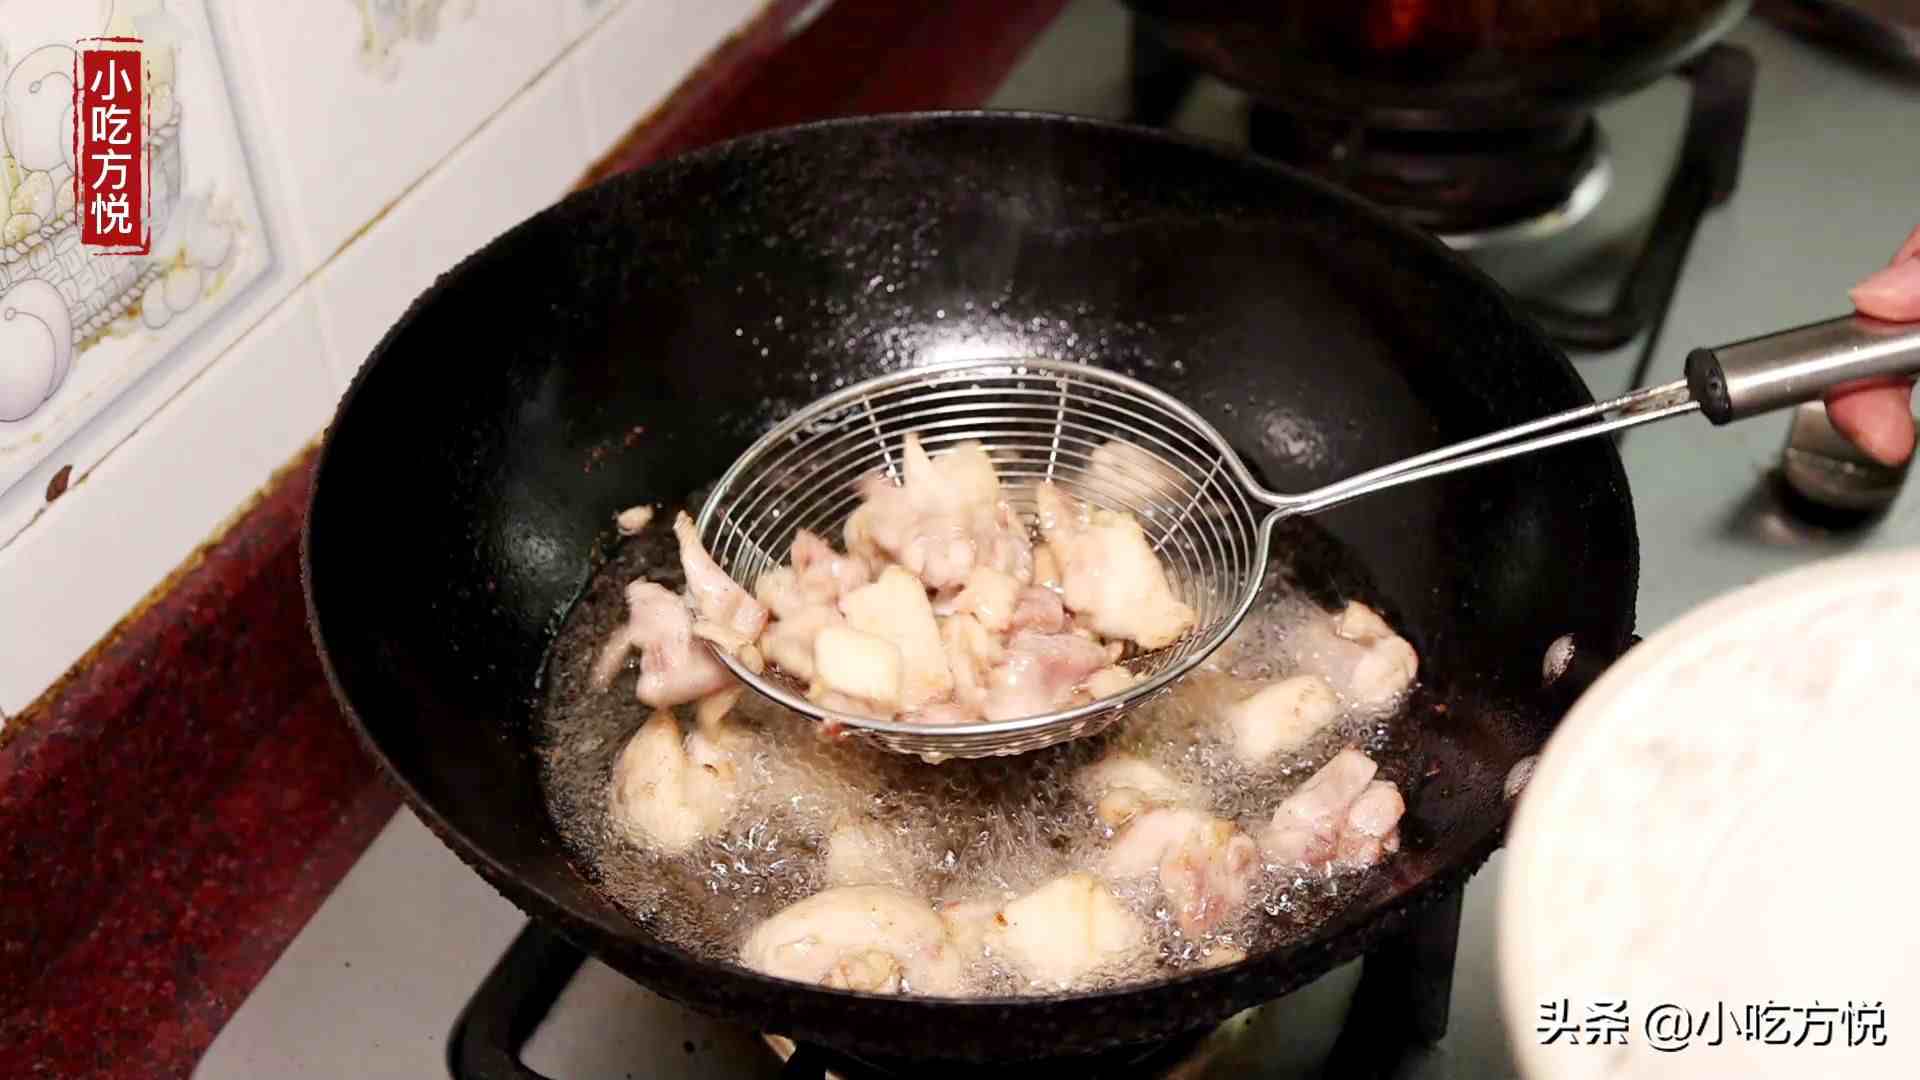 山西刀削面—香菇炖鸡卤的做法及配方，可做商业用途，配方精确